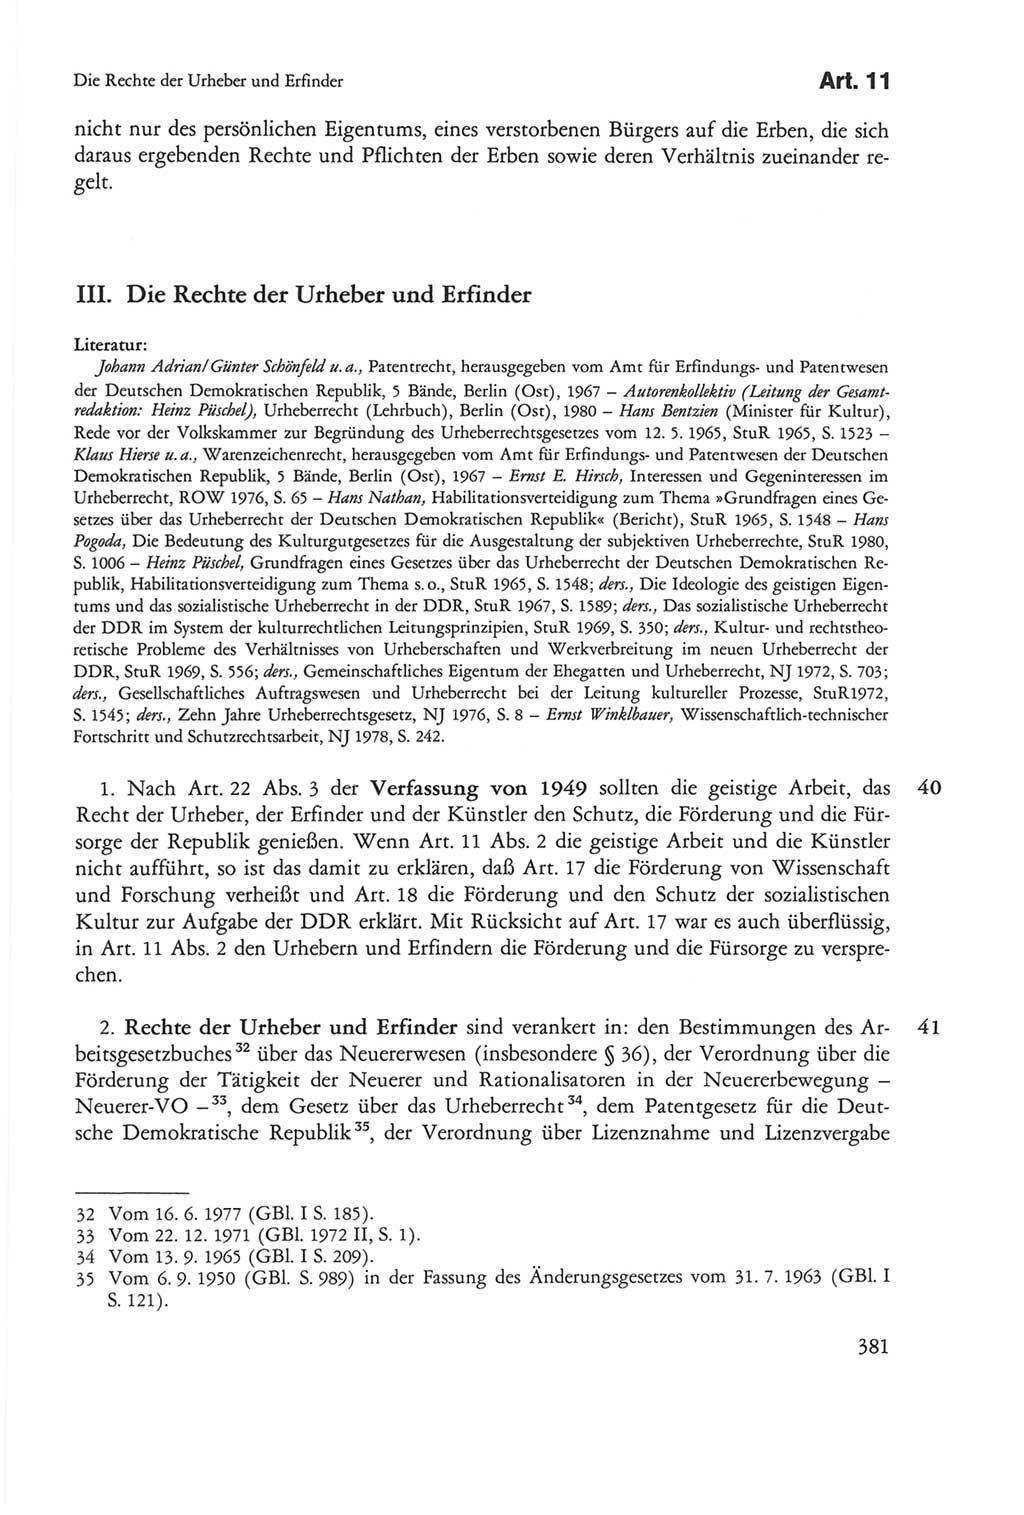 Die sozialistische Verfassung der Deutschen Demokratischen Republik (DDR), Kommentar mit einem Nachtrag 1997, Seite 381 (Soz. Verf. DDR Komm. Nachtr. 1997, S. 381)